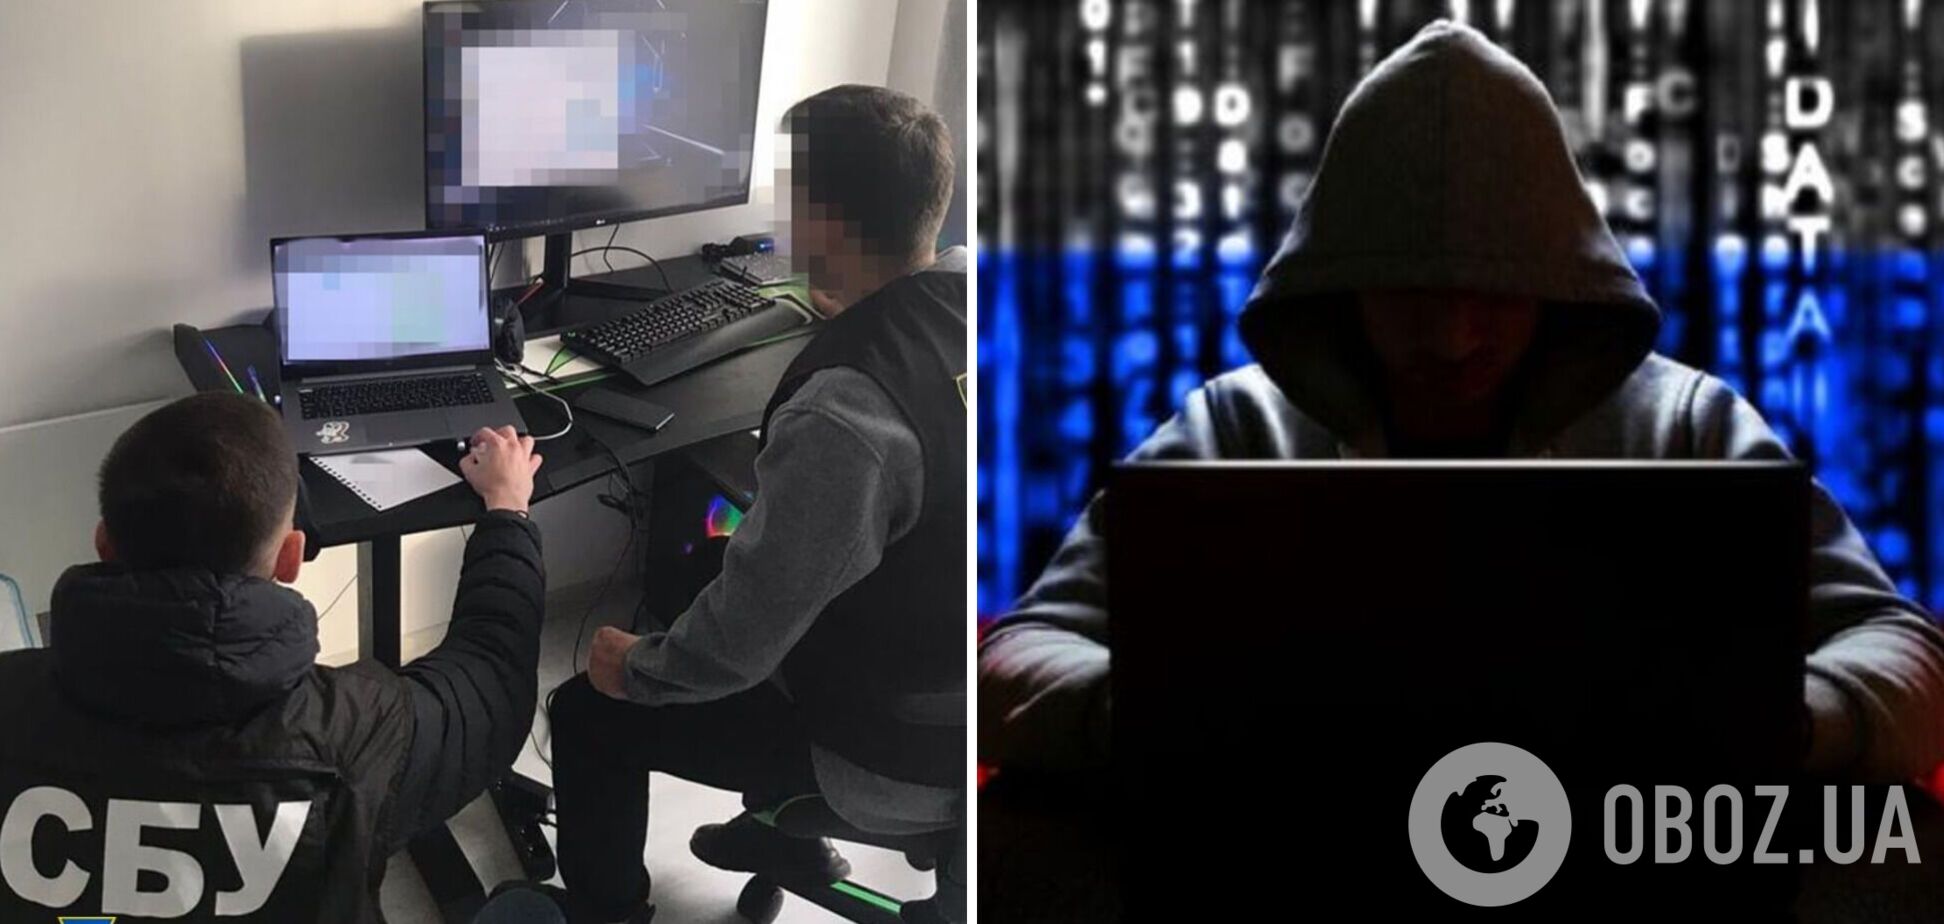 СБУ нейтрализовала группировку хакеров, которая взломала почти 30 млн аккаунтов граждан Украины и ЕС. Фото